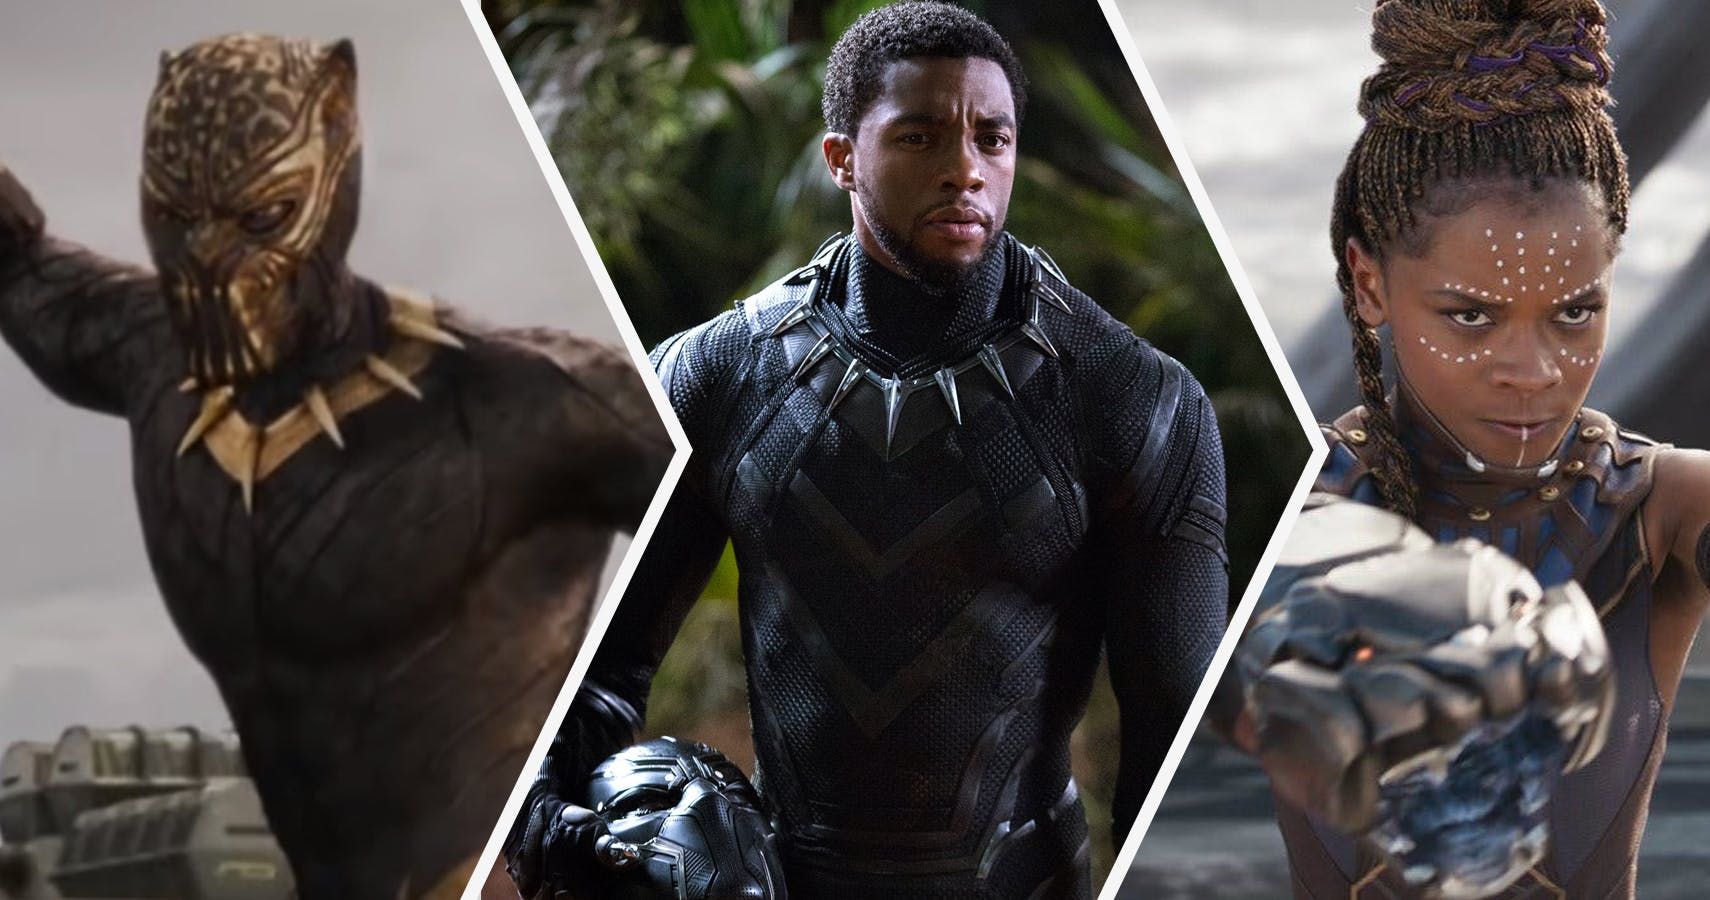 Disney usará o dinheiro do Black Panther para ajudar a expandir os programas STEM